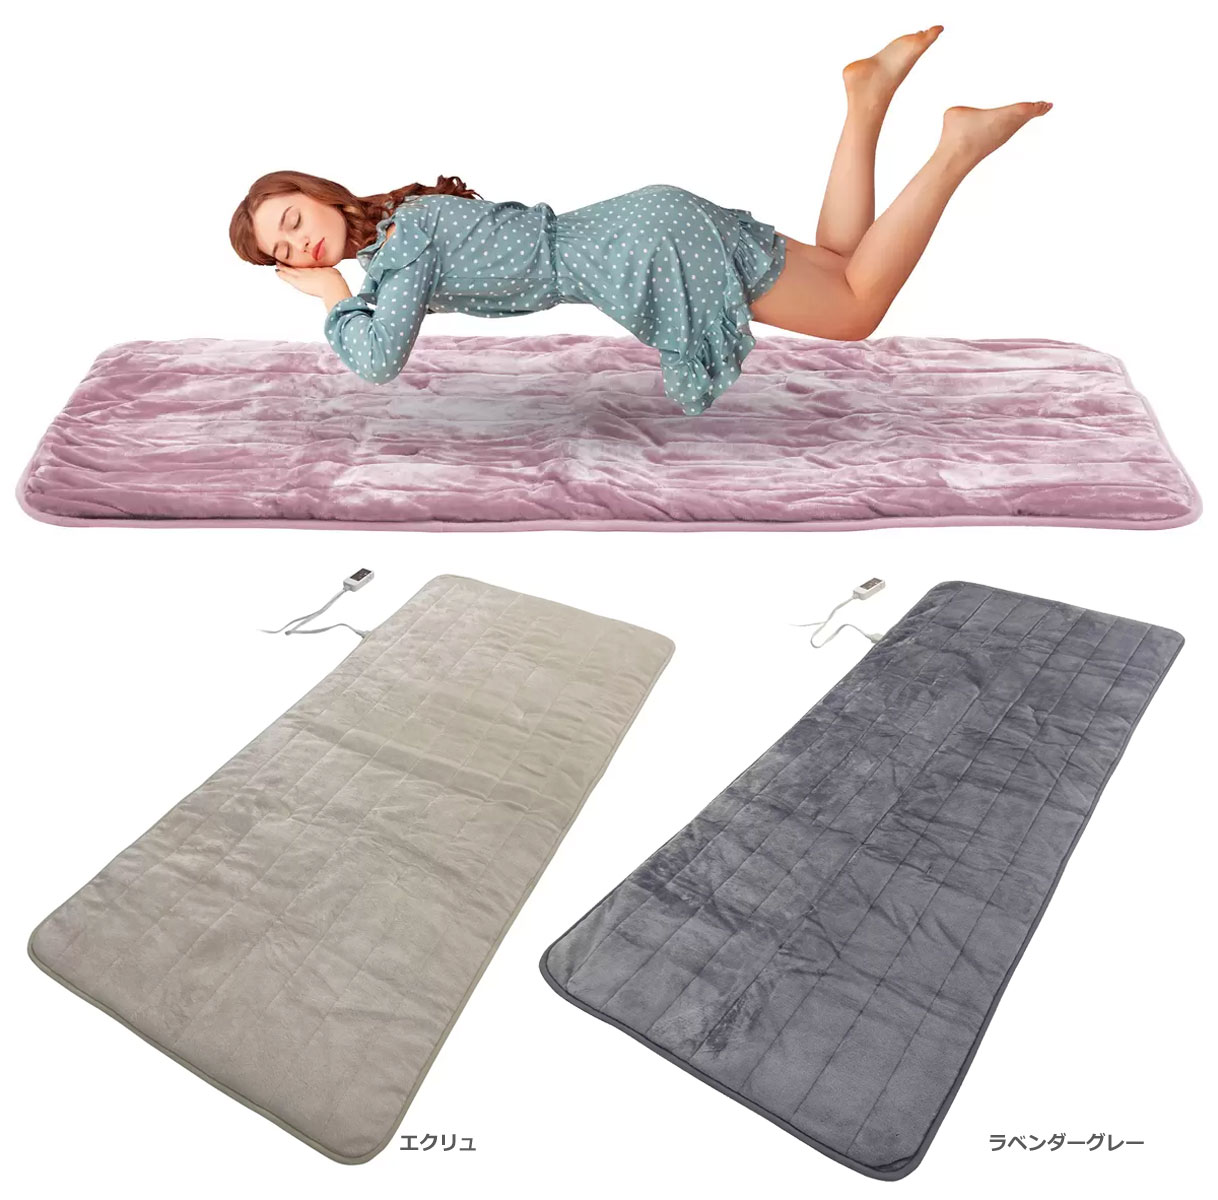 ・ごろ寝にピッタリのサイズ　長さ180cm ソファーに掛けたり、床に寝転んだり、従来の敷くカーペットとは違った扱いやすさが魅力です。 ・中綿量　メーカー従来商品に比べて、約1.5倍の増量 ふかふかの手触りが心地よいフランネル仕上げ。やわらかく光沢のある生地です。 ・コントローラーでカンタン温度調節 右側のつまみを動かすだけで温度を調節出来ます。 ・切り忘れ防止タイマー 電源を入れてから8時間後に、自動で電源が切れます。切り忘れ防止に最適です。 ・ダニ退治機能 本体の温度を上げて、布団などから移ってきたダニを退治する機能です。 ・すべり止め加工 裏面にすべり止め加工が施されています。寝ころんだ時もすべりにくく快適です。 ・本体丸洗い可能 洗濯でいつでも清潔に、ご使用できます。本体からコントローラーを外して洗濯してください。 電気代目安:（1時間当たり）：(強)1.9円、(中)1.2円、(弱)0.7円 消費電力量:（1時間当たり）：(強)70Wh、(中)46Wh、(弱)27Wh 電源コード:長さ：電源側 約1.9M、 本体側 約0.6M 表面材質:ポリエステル100％ サイズ：190cm×80cm 【3,980円以上送料無料についての注意事項】 ※同一の対応ショップで同一注文・同一配送先へのお買い物合計額が3,980円(税込)以上の時に送料無料になります。 ※沖縄県、離島は送料無料ラインの対象外となります。別途、送料が発生します。（9,800円以上ご購入いただいても送料無料にはなりません。） ※大型宅配便・クール便は、送料無料ラインの対象外となります。 ※お買い物額の合計が3,980円（税込）以上でも、送料無料ライン対象外の 商品が含まれていると、送料無料にはなりません。 ※一度注文を行われた後で、複数の注文をまとめることはできません。